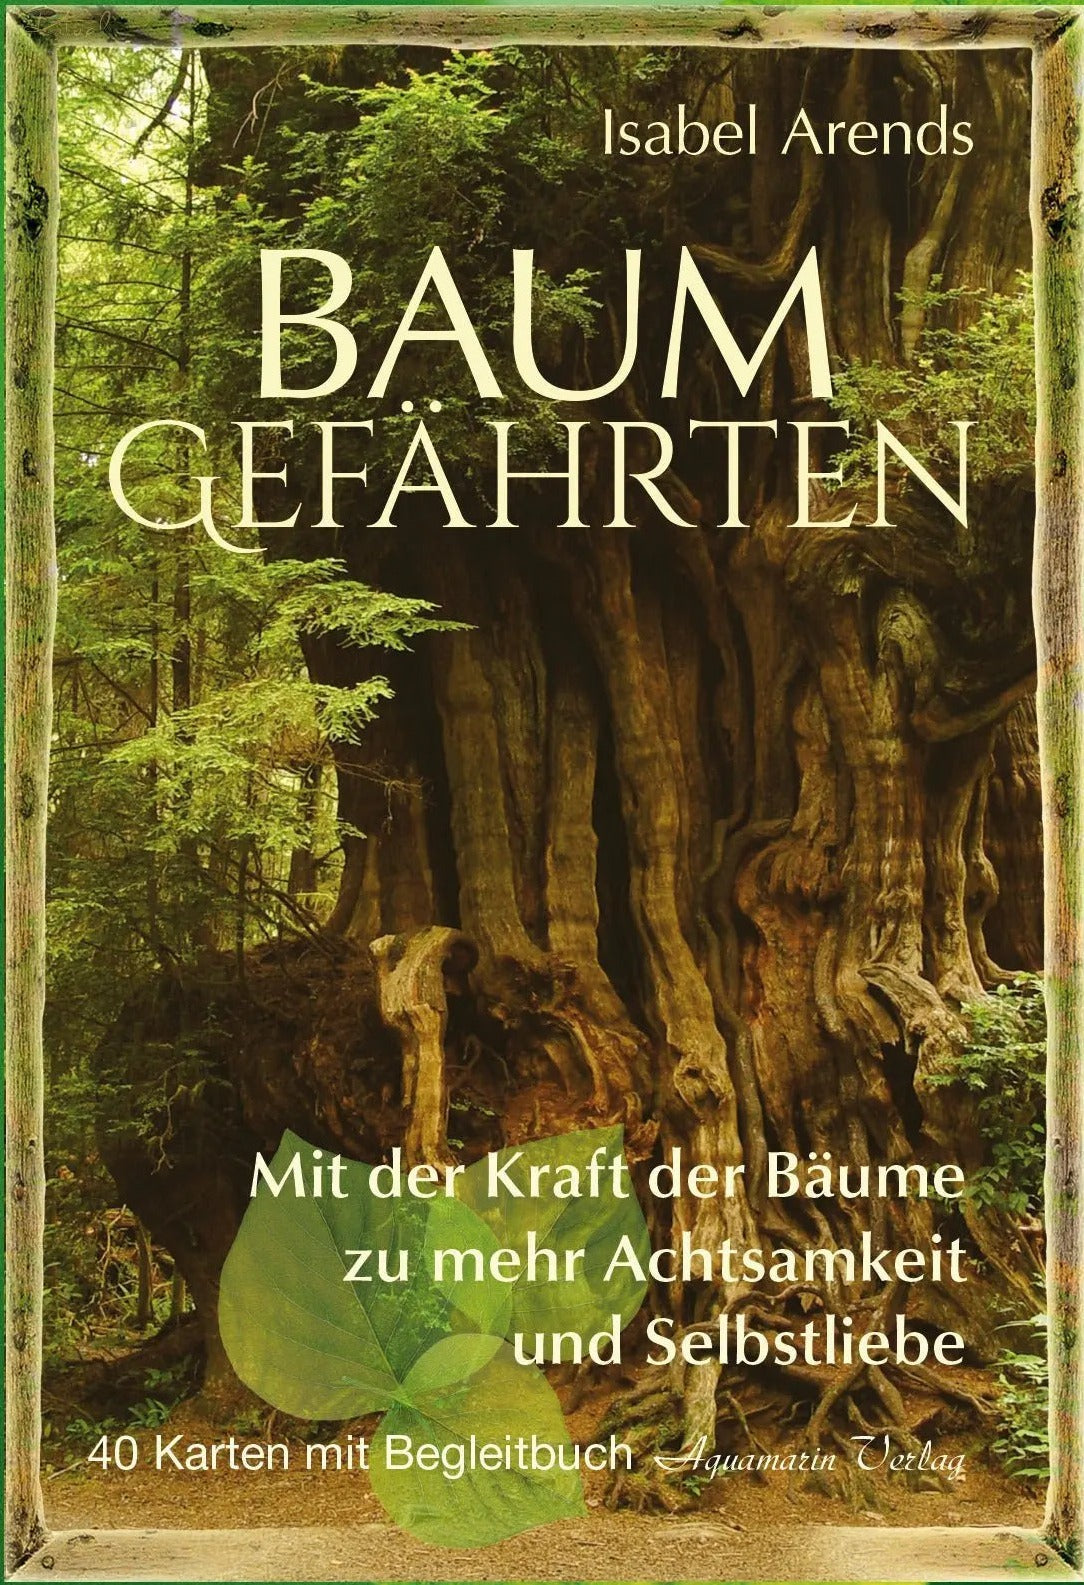 Baumgefährten - Orakelkarten v. Isabel Arends - Ritualmanufaktur.de